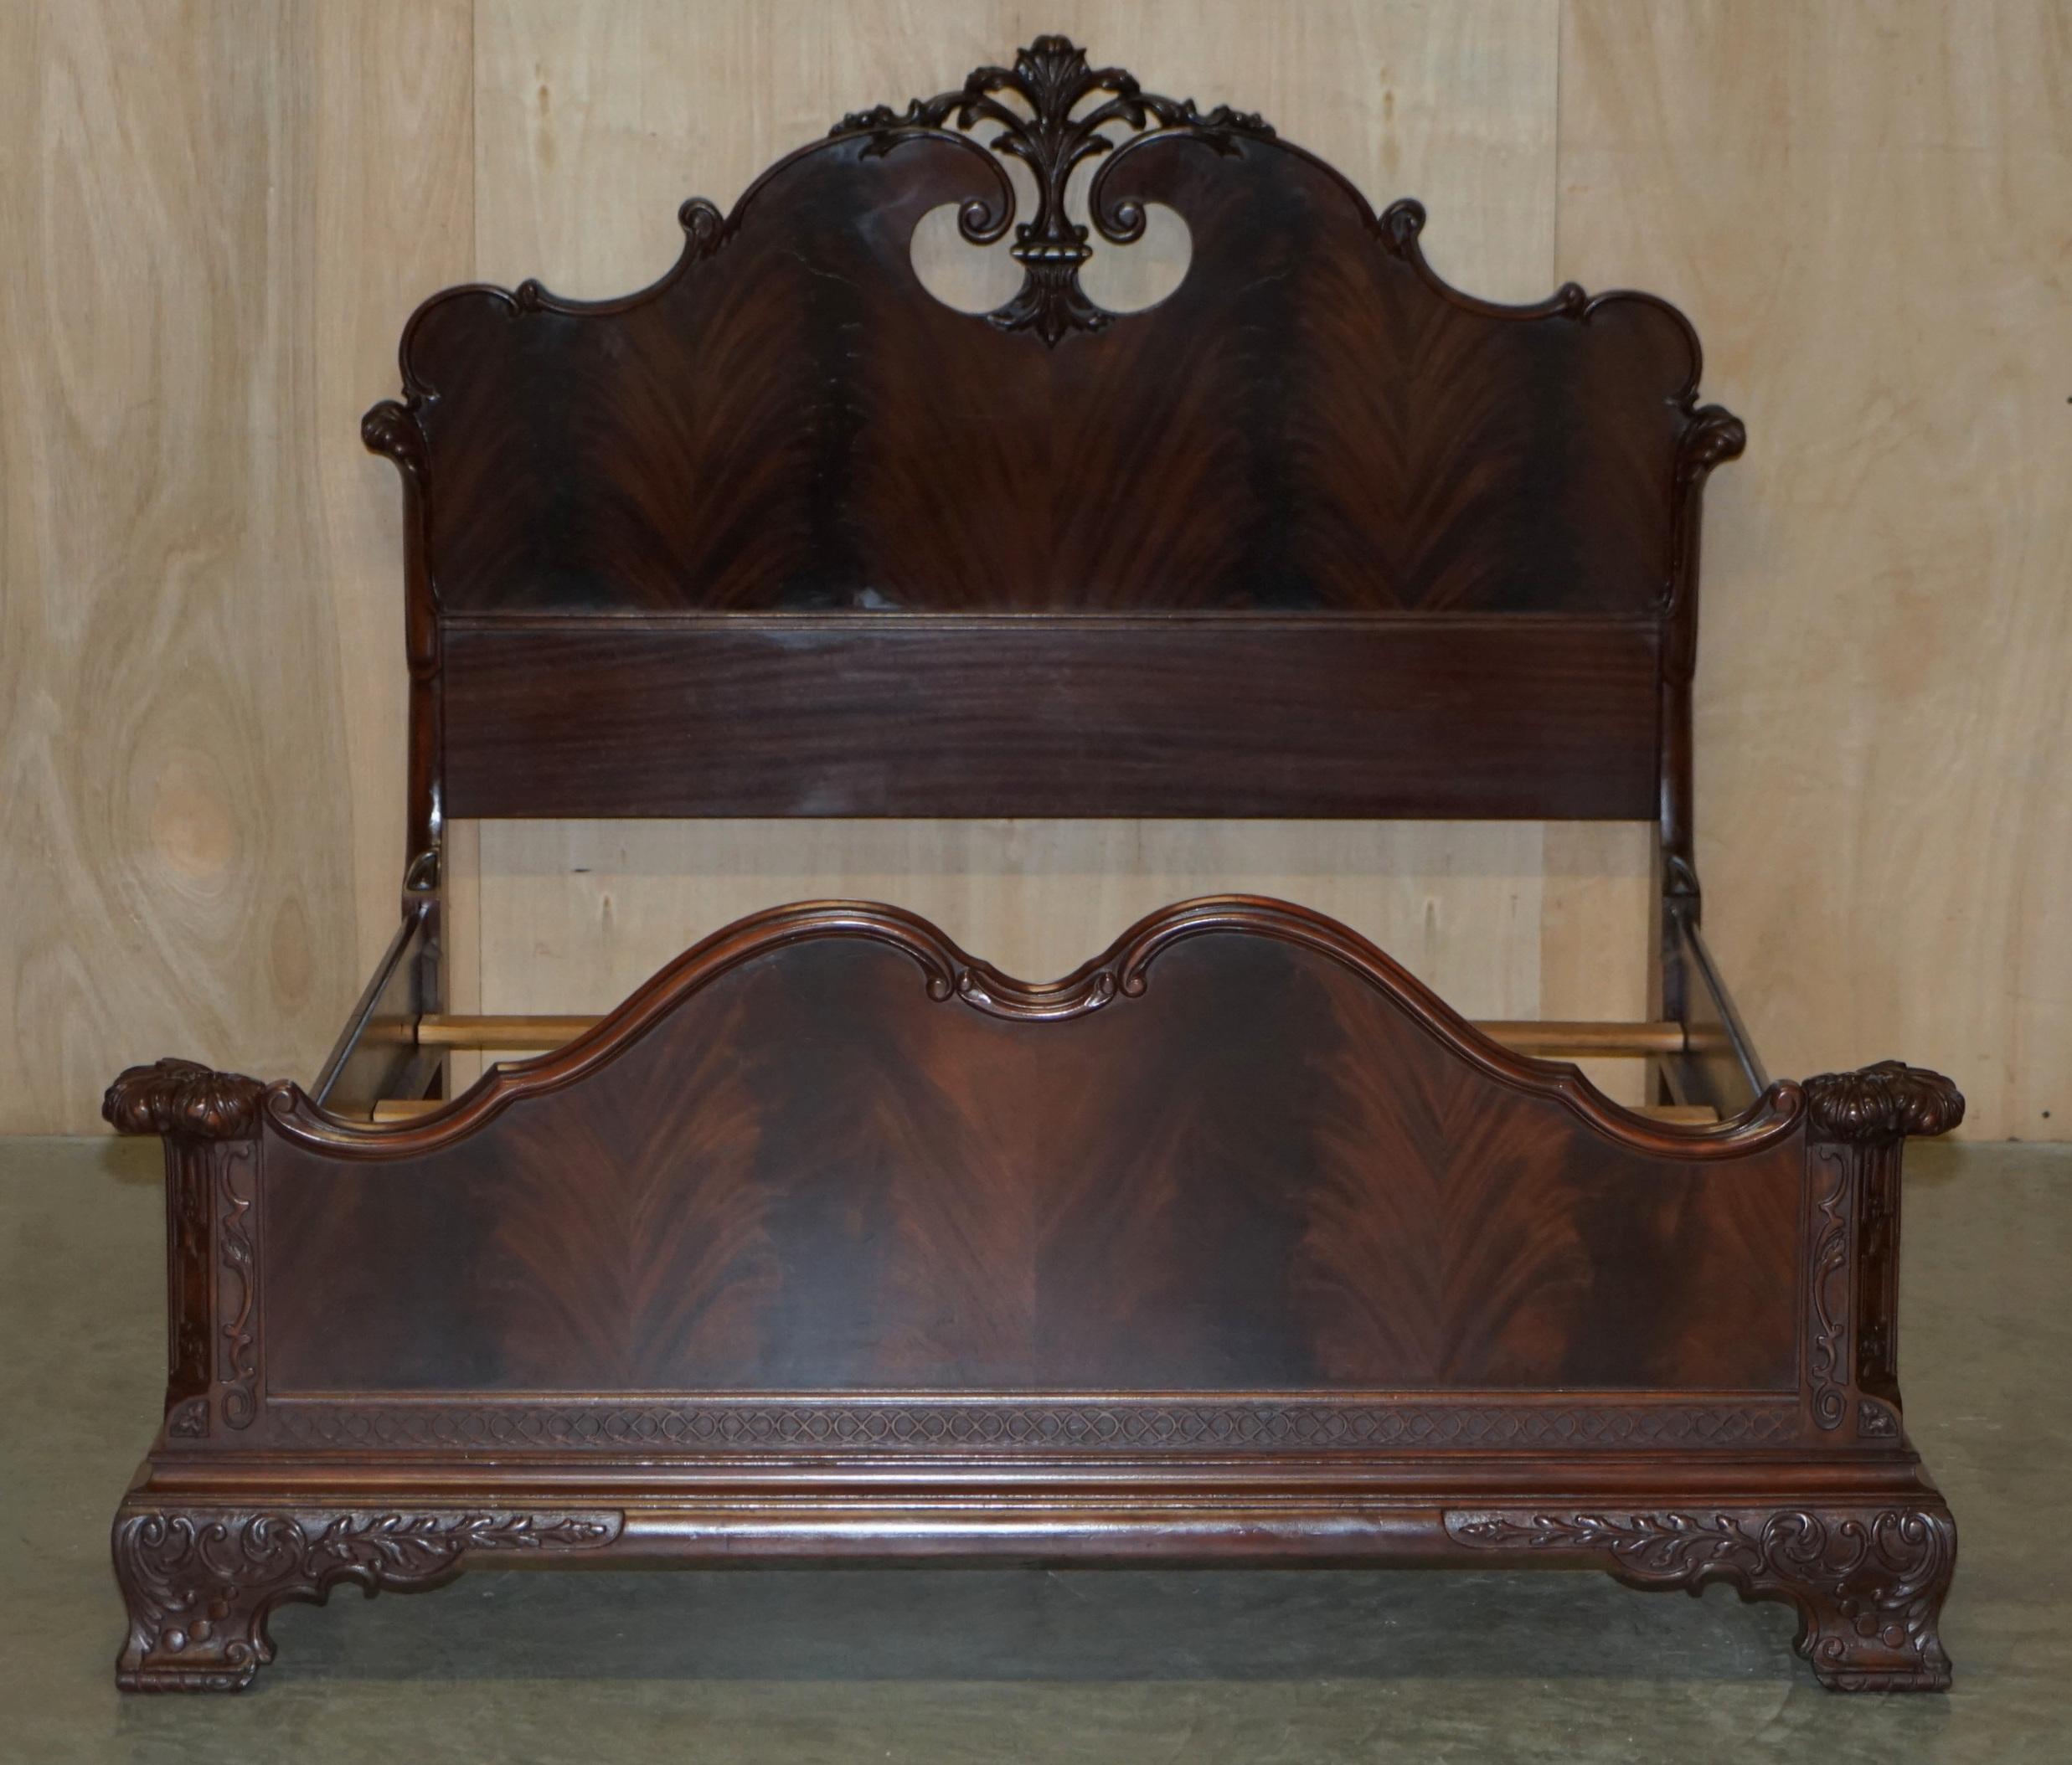 Royal House Antiques

Royal House Antiques freut sich, dieses absolut erhabene, handgeschnitzte Doppelbettgestell aus Honduras-Mahagoni zum Verkauf anbieten zu können.

Bitte beachten Sie die Liefergebühr aufgeführt ist nur ein Leitfaden, es deckt